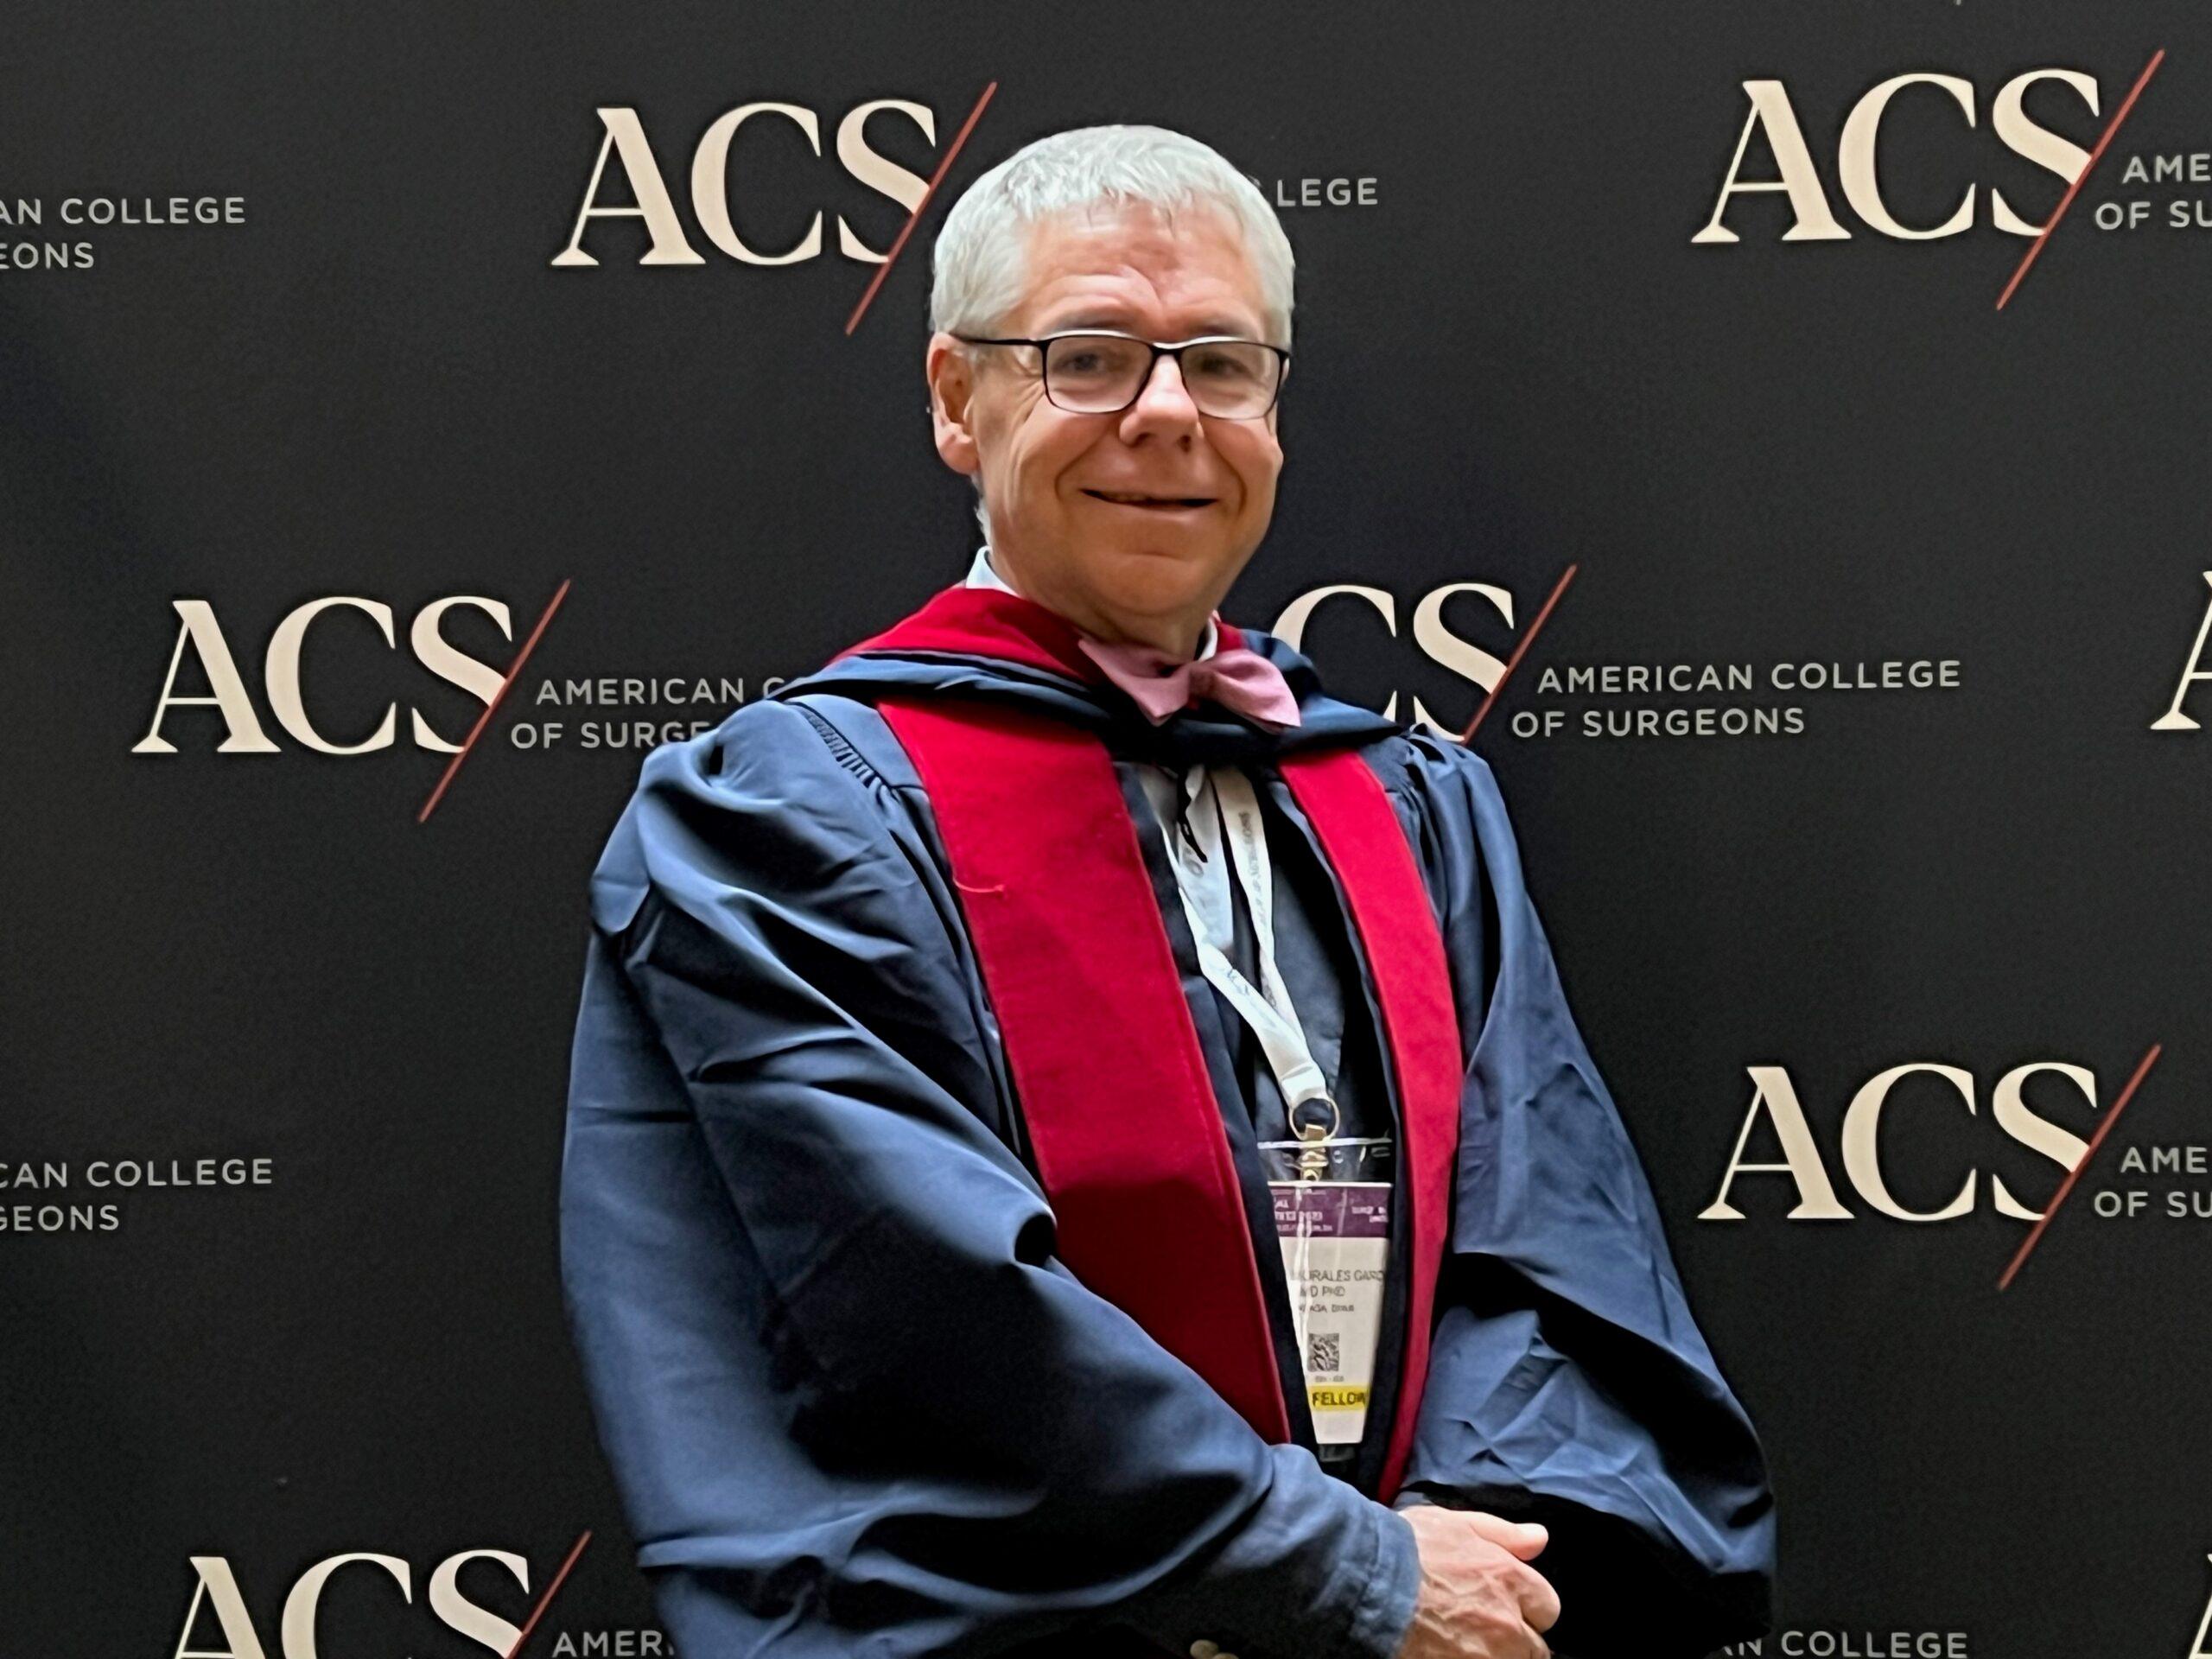 El doctor Dieter Morales ingresa en la prestigiosa institución internacional de cirujanos  American College of Surgeons